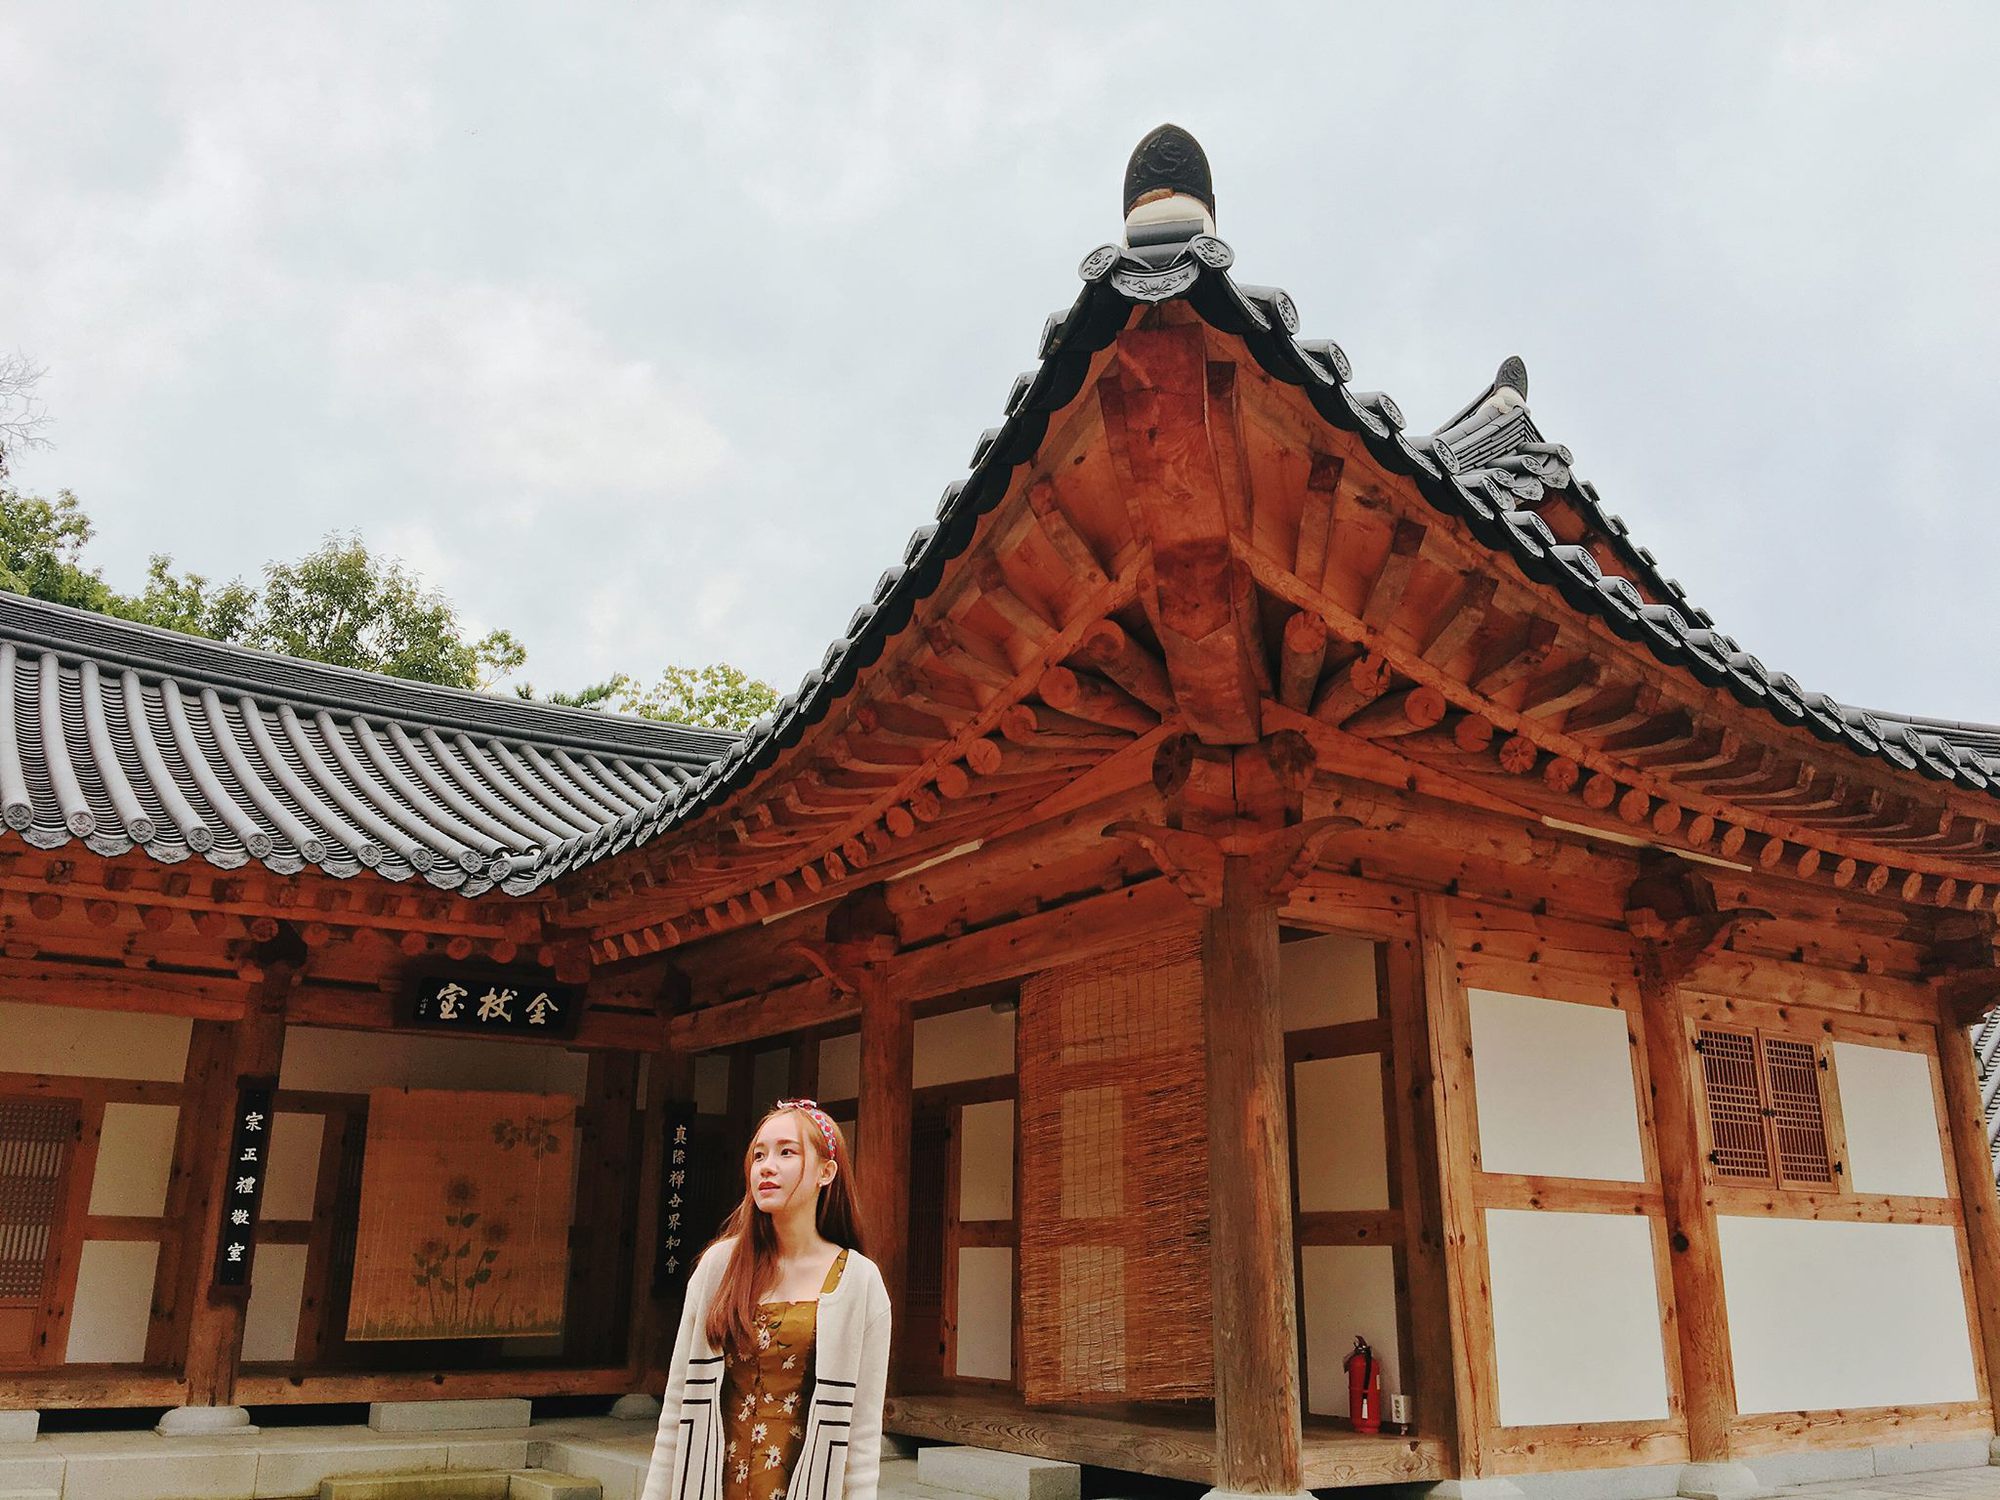 Nàng dâu Việt kể Tết Trung thu ở Hàn Quốc: Quan trọng hơn Tết âm lịch, làm mâm cỗ gần 30 món - Ảnh 3.